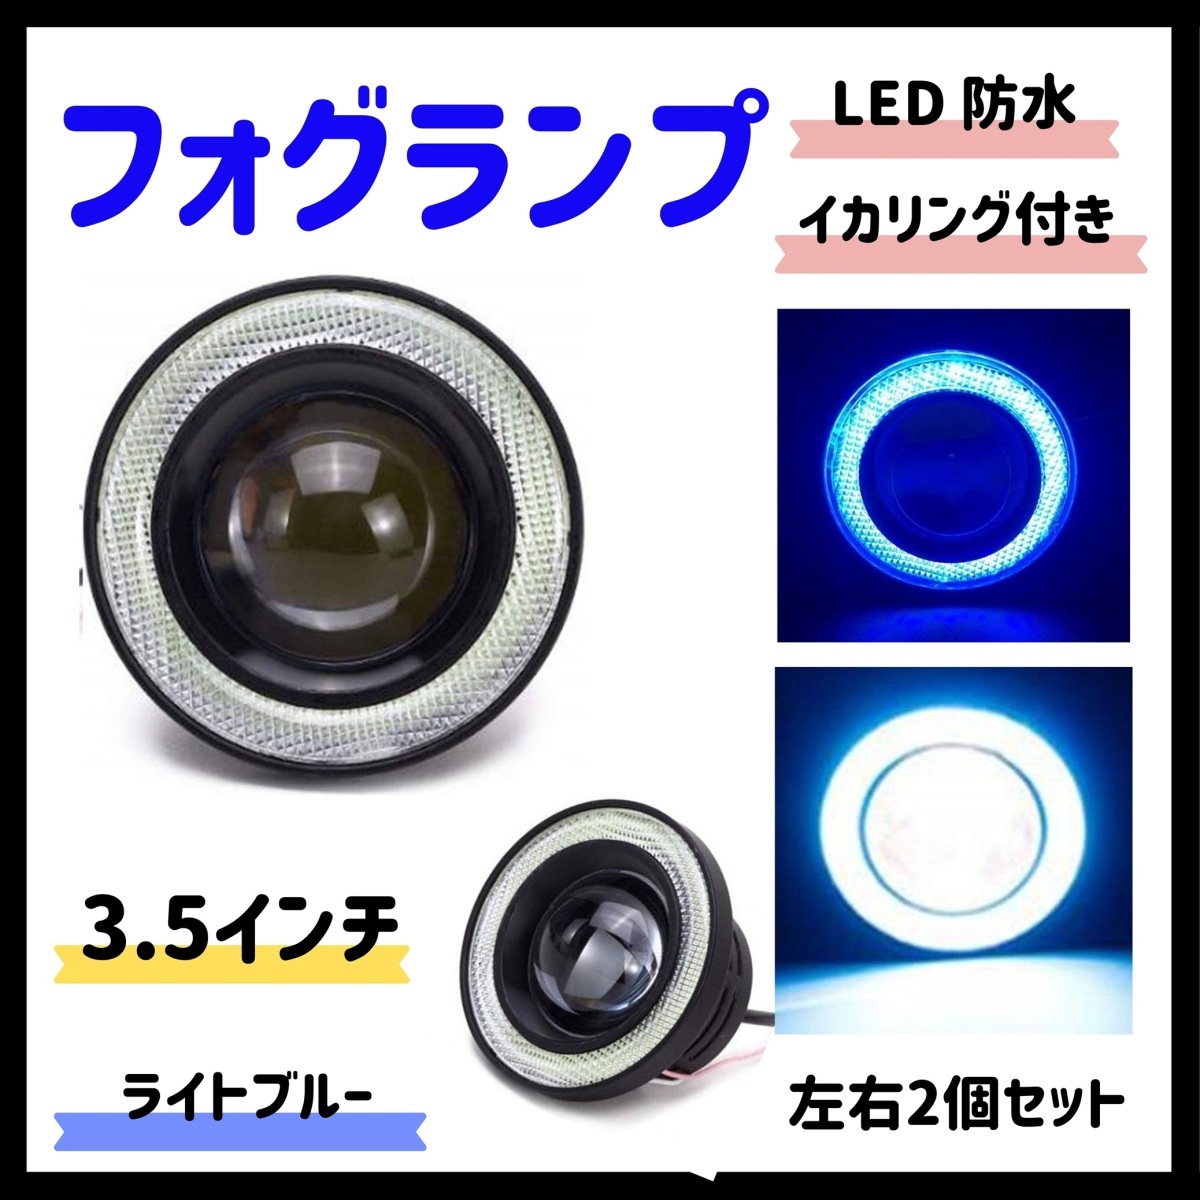 Kstyle 水色 3.5 LED フォグランプ 汎用 イカリング 付き 高性能 COB 防水 左右セット_画像1